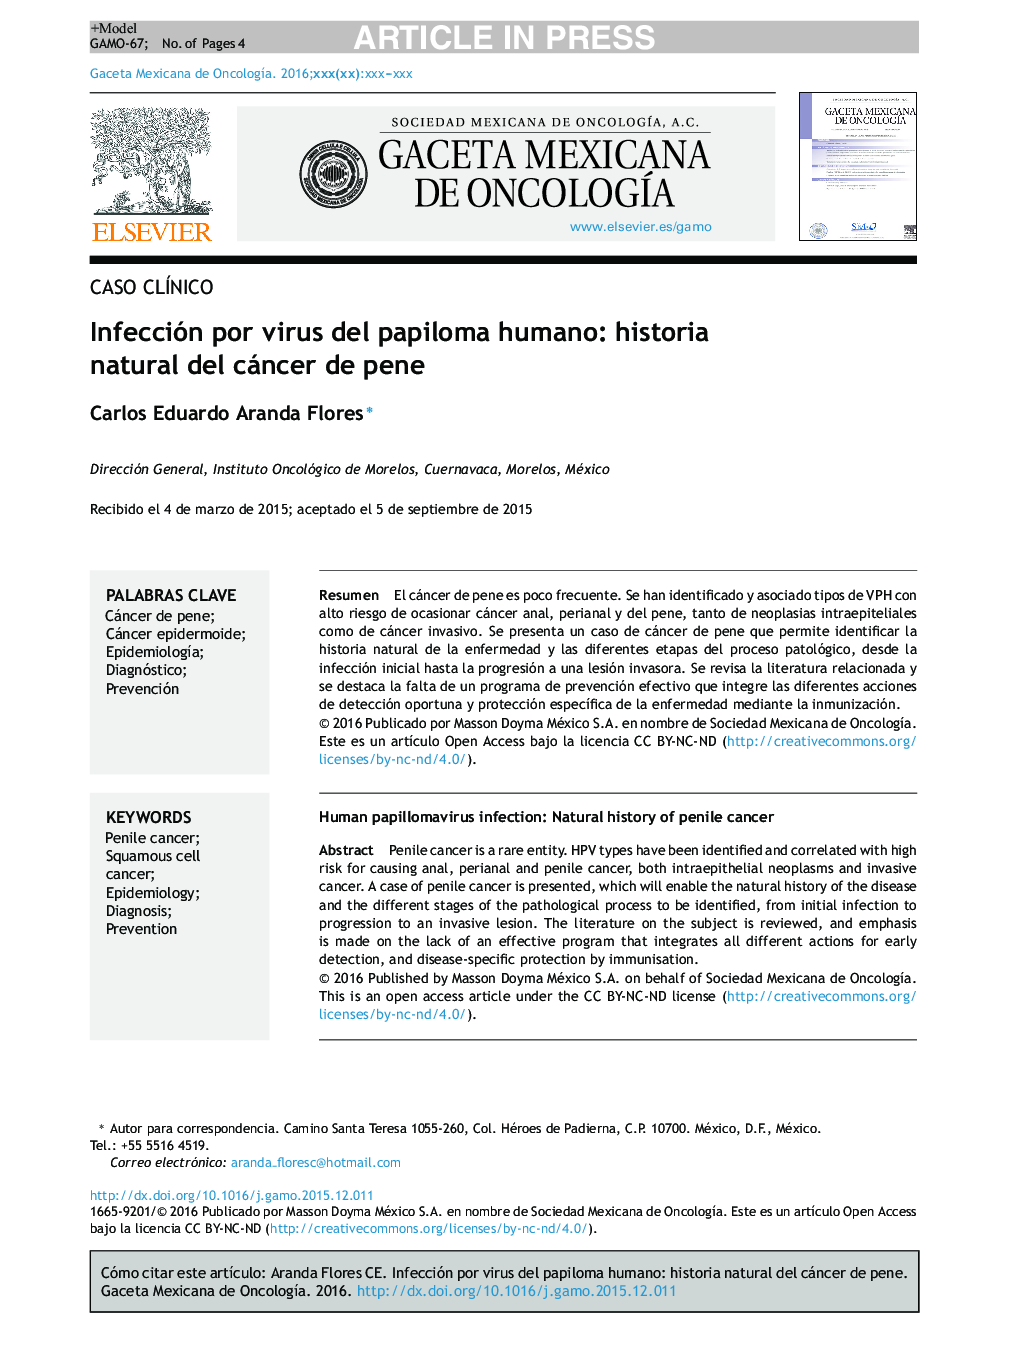 Infección por virus del papiloma humano: historia natural del cáncer de pene